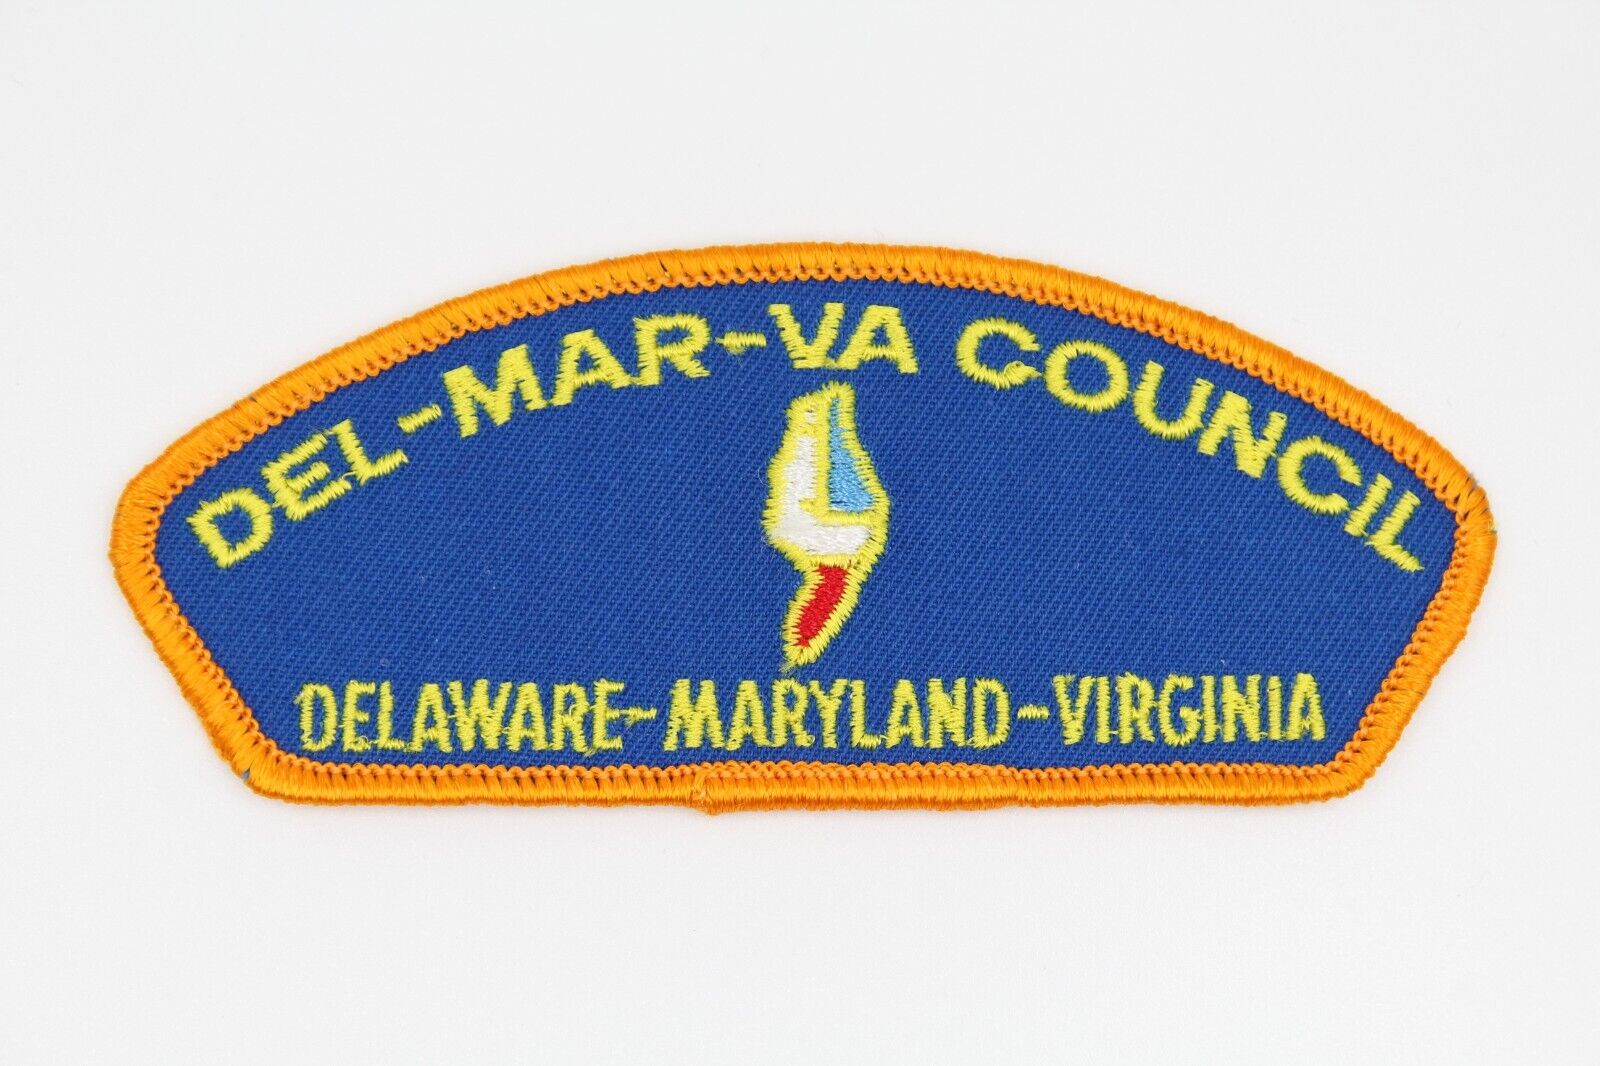 Del-Mar-Va Council CSP Delaware Maryland VA Boy Scouts Patch BSA 